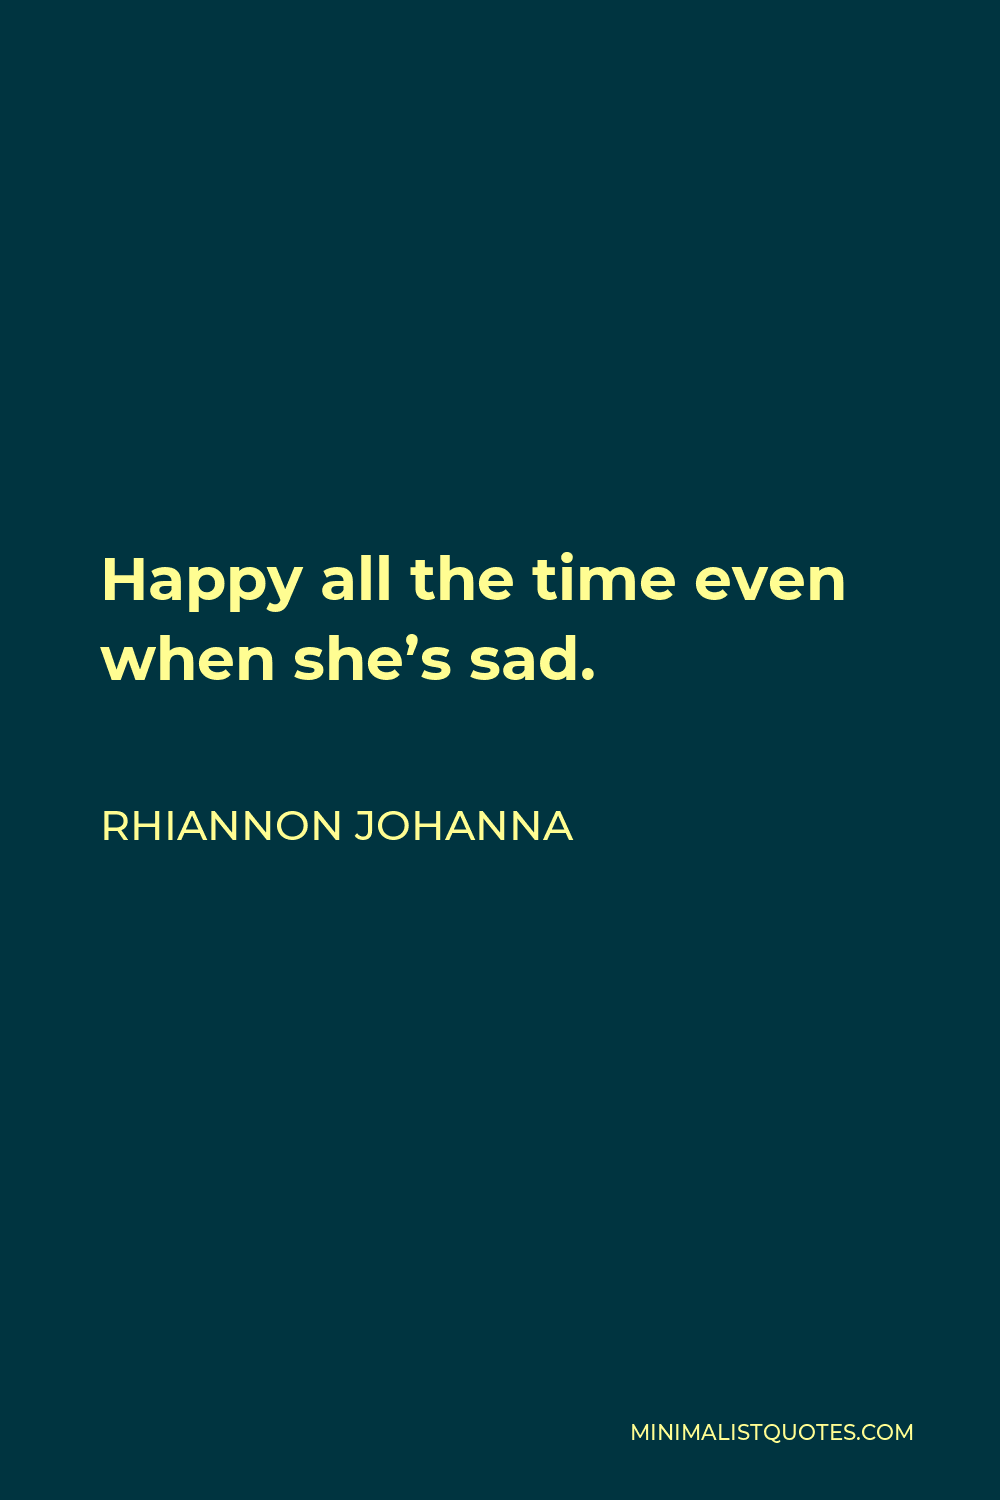 Rhiannon Johanna Quote - Happy all the time even when she’s sad.